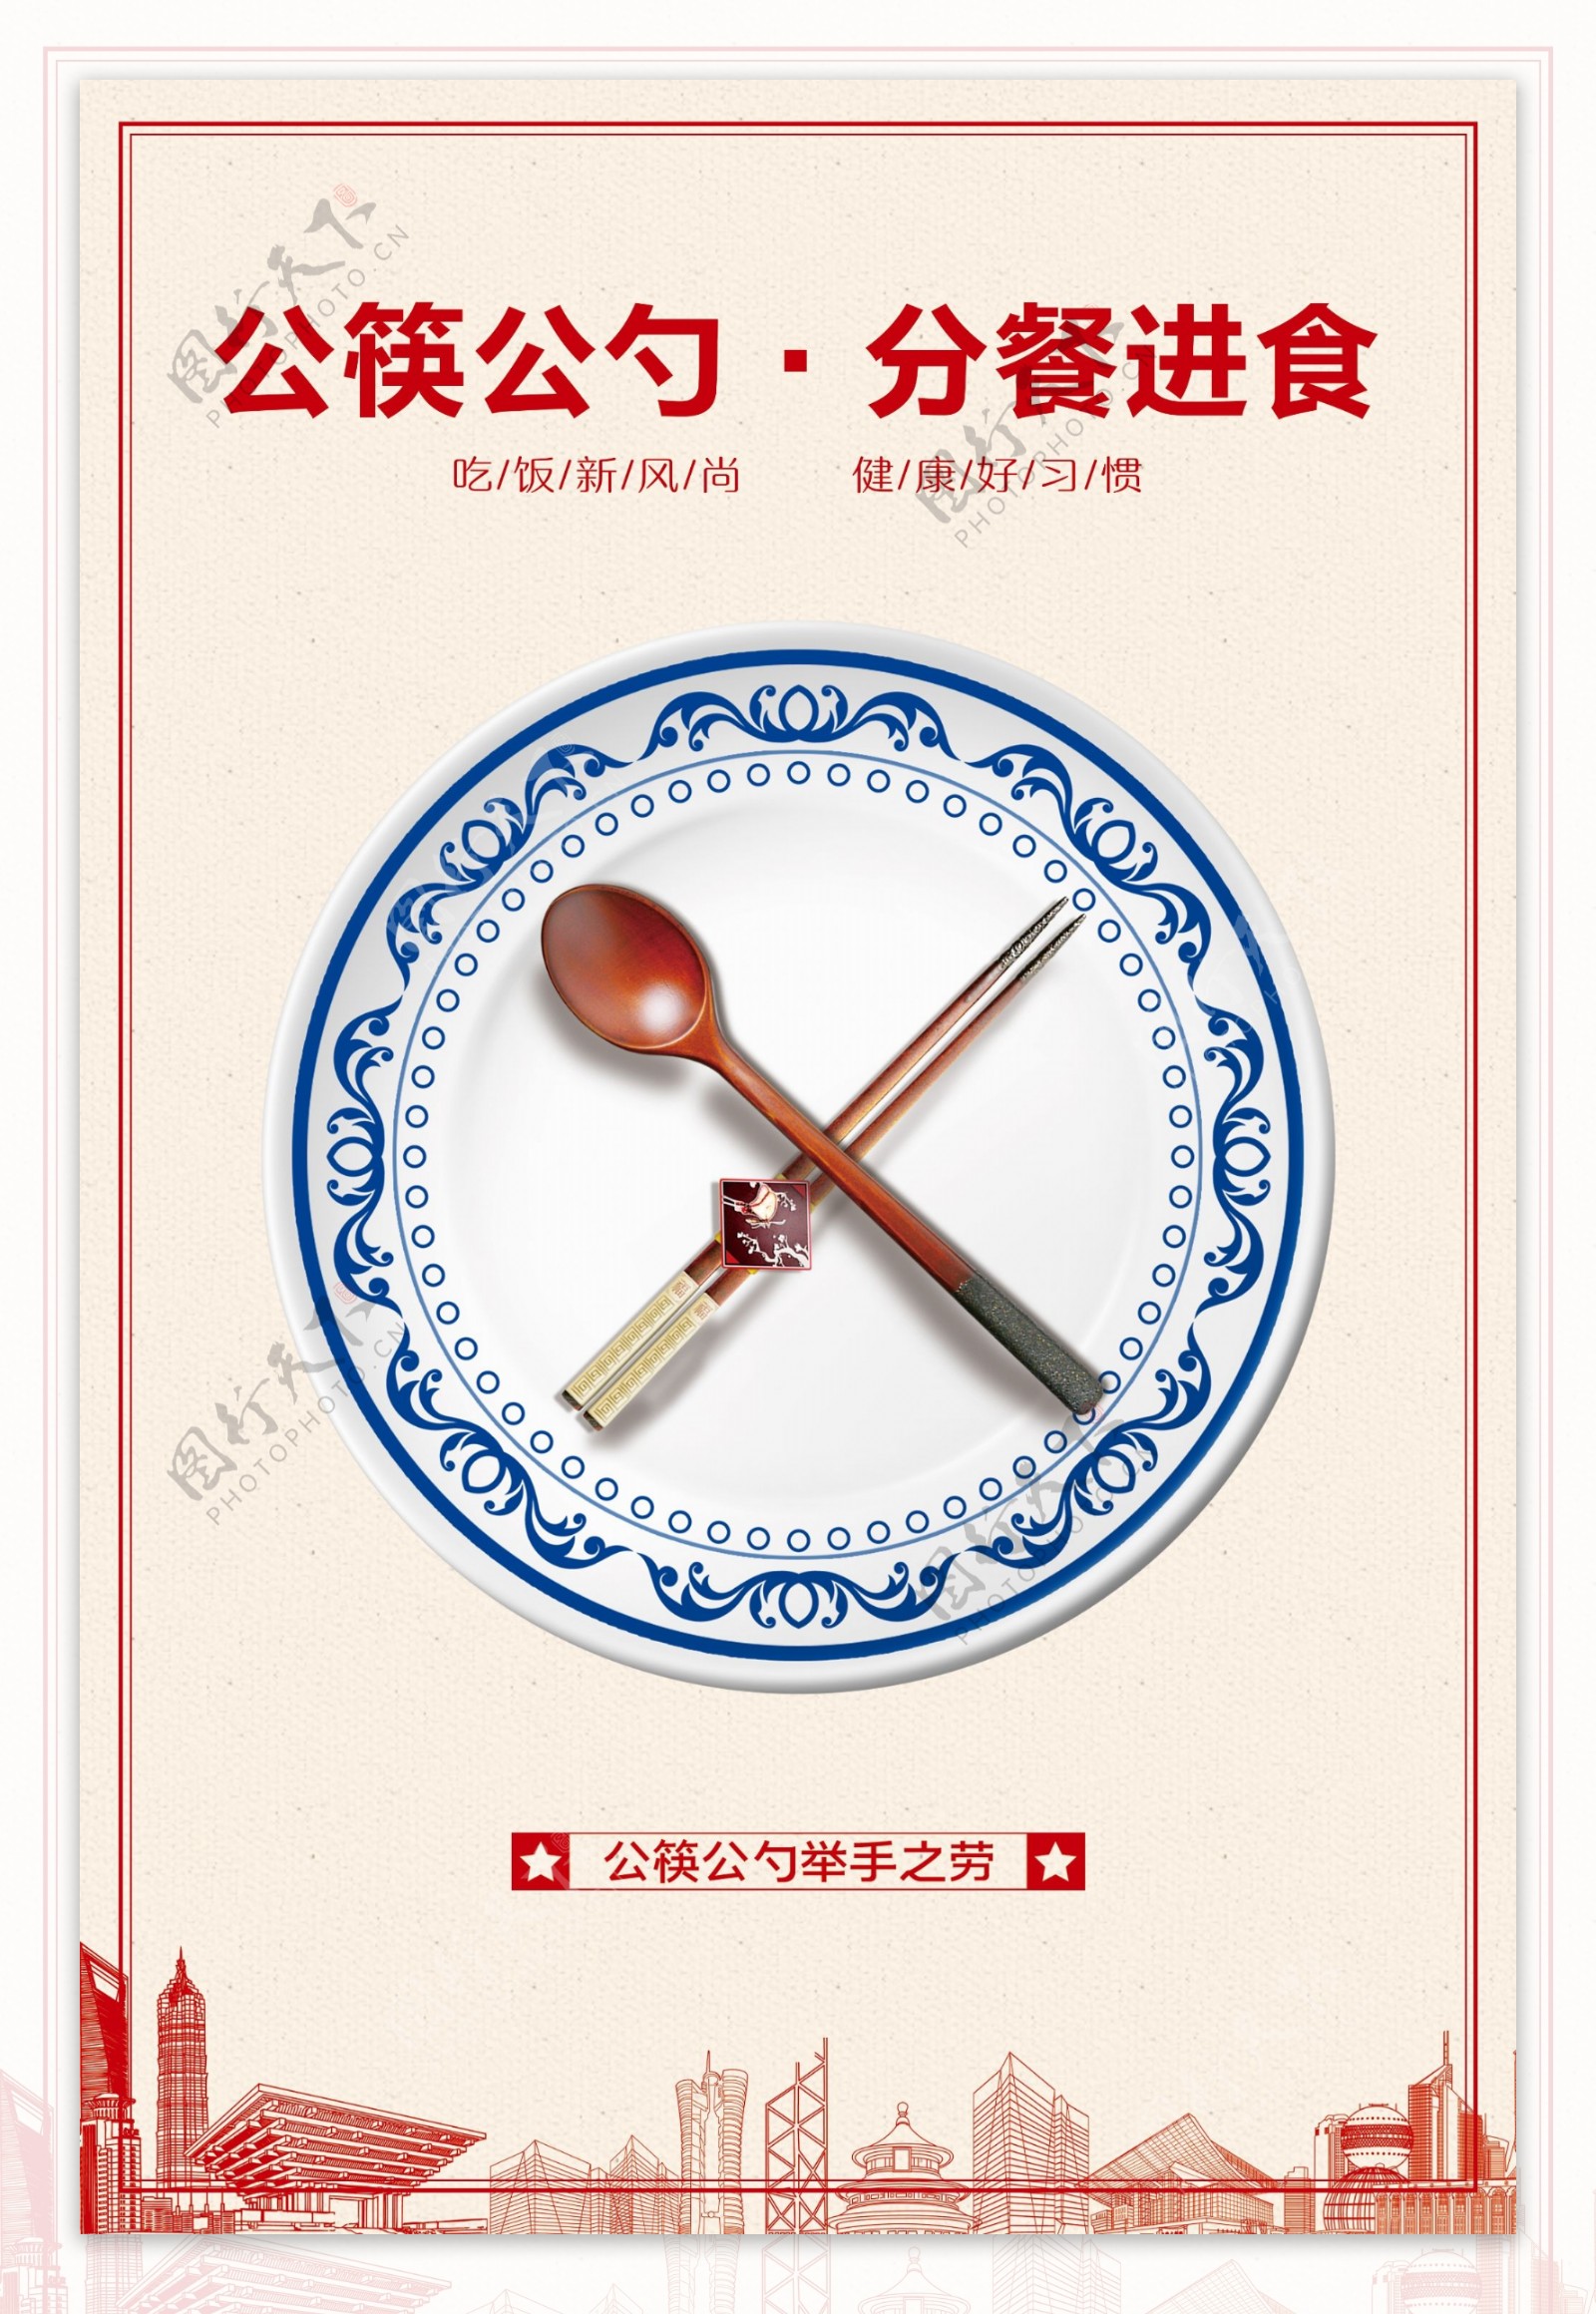 公勺公筷